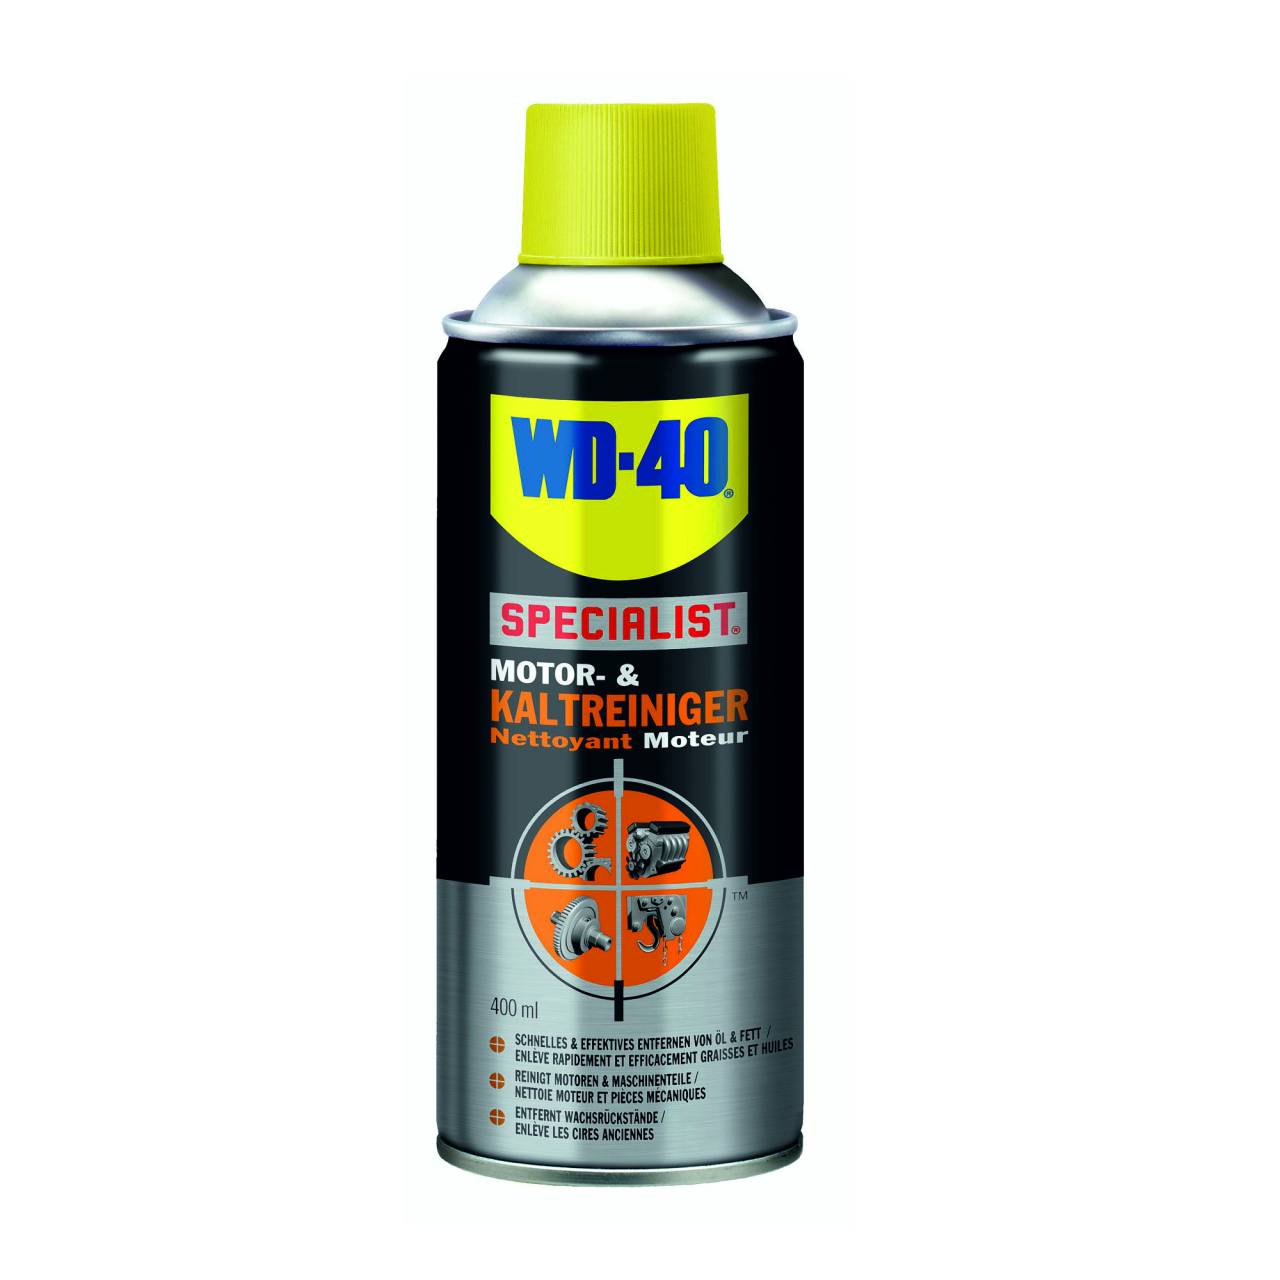 WD-40 Motor- & Kaltreiniger / 400 ml Spraydose